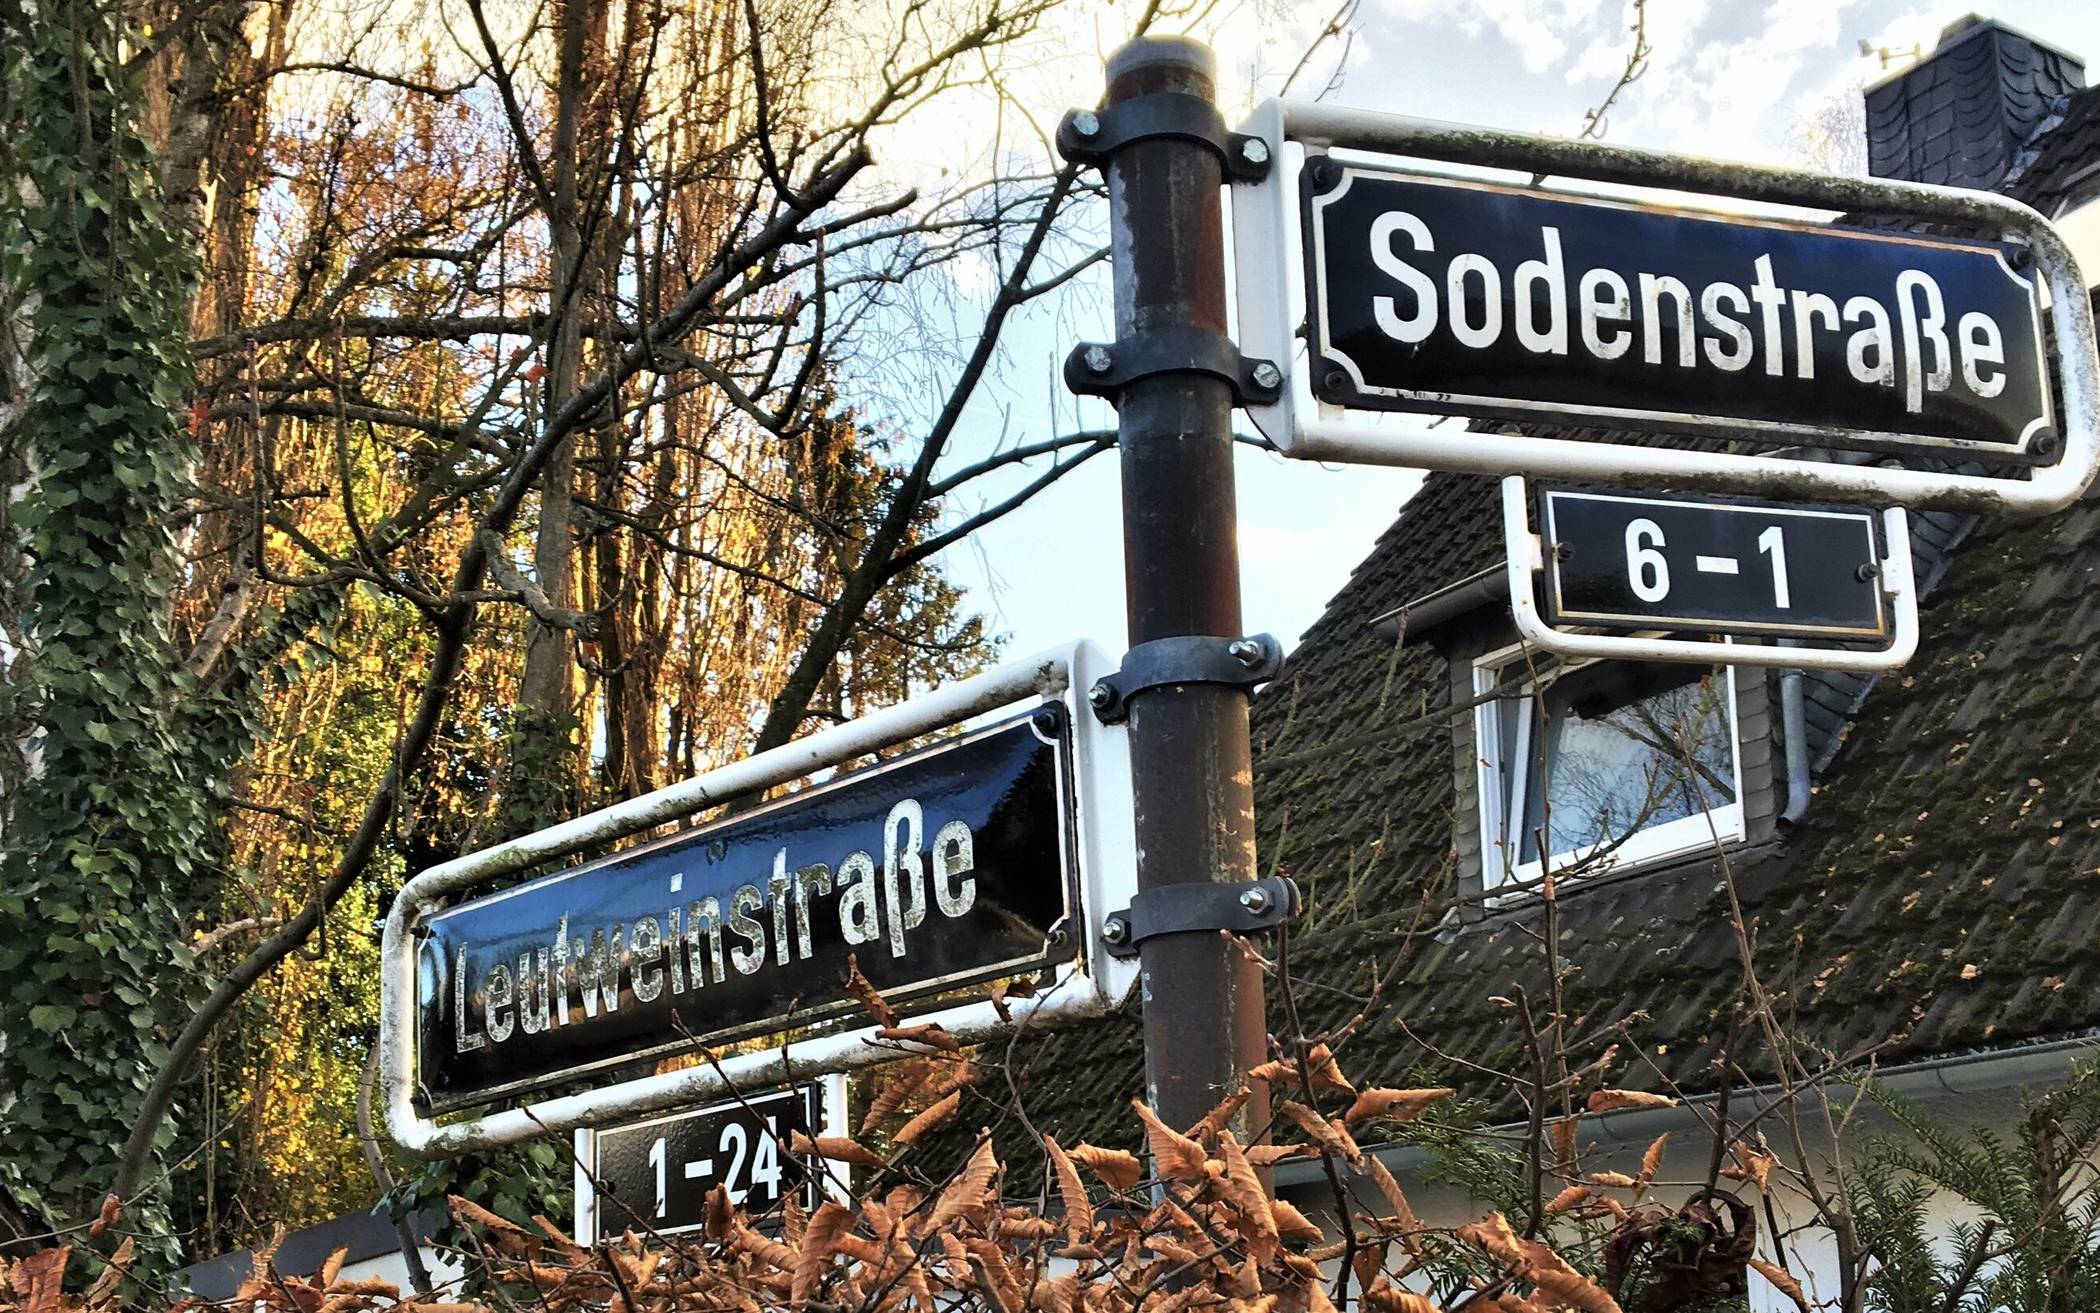 Umstrittene Namensgebung - die Leutweinstraße in